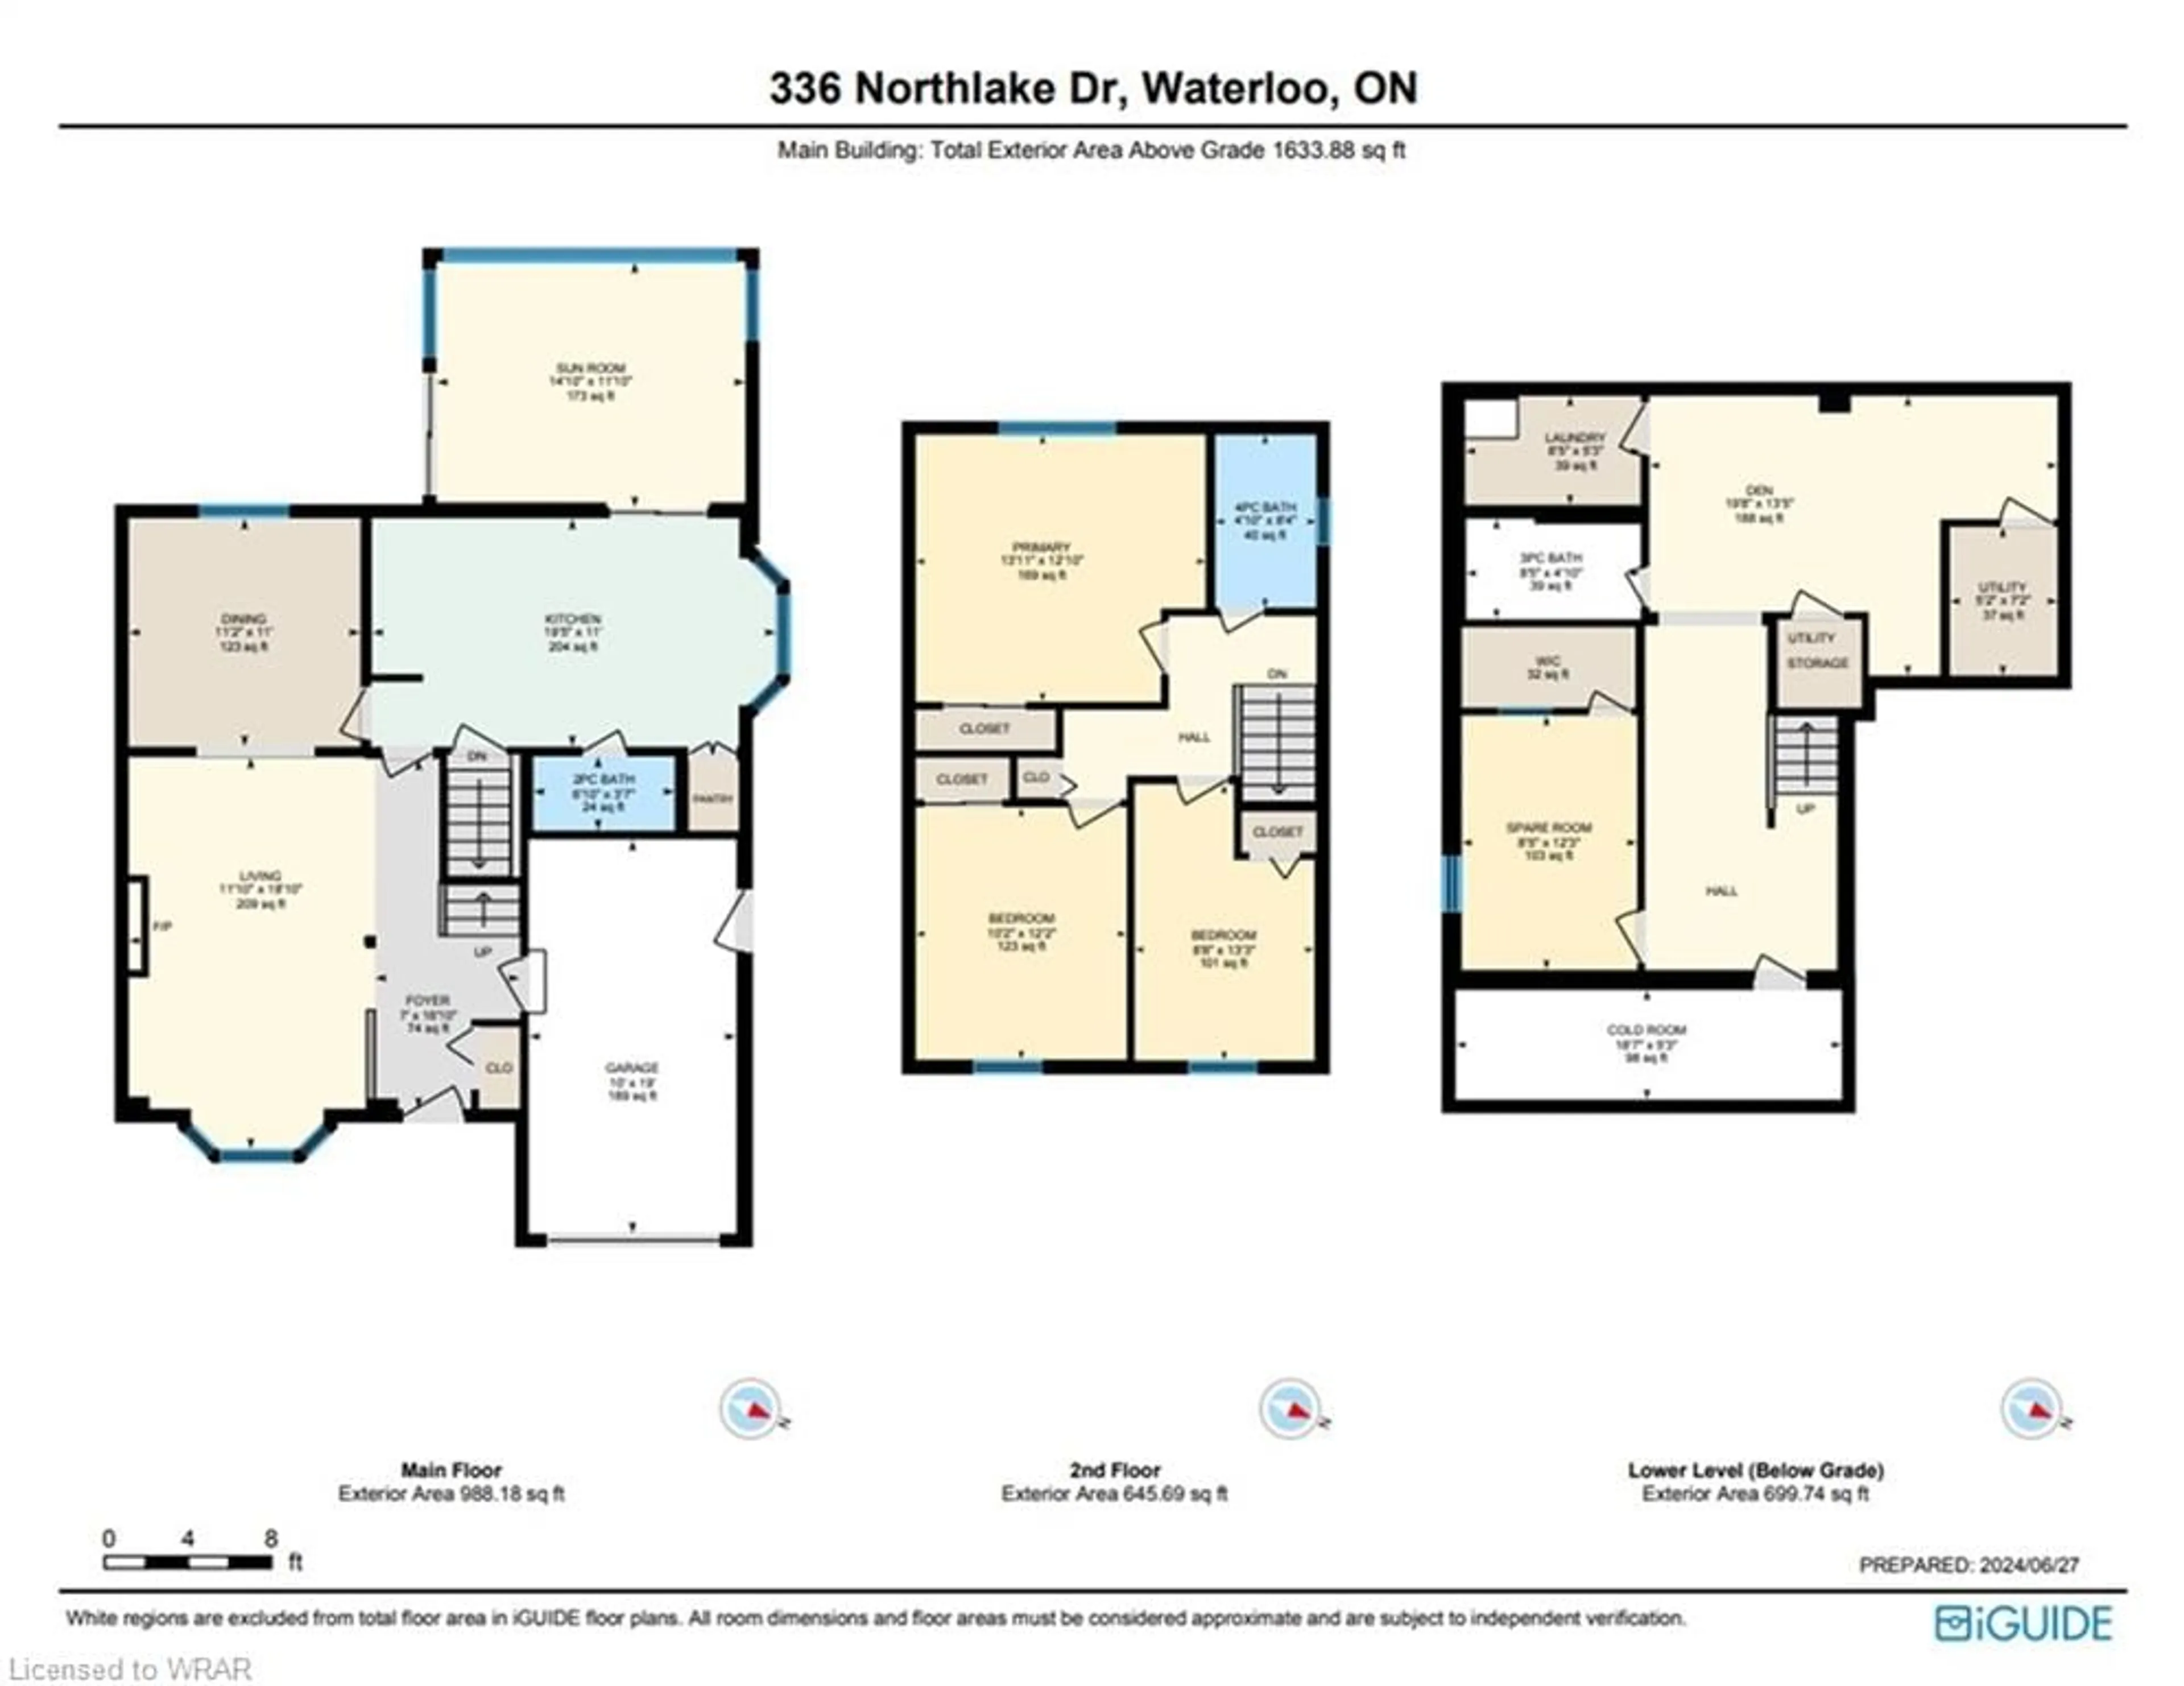 Floor plan for 336 Northlake Dr, Waterloo Ontario N2V 1R1